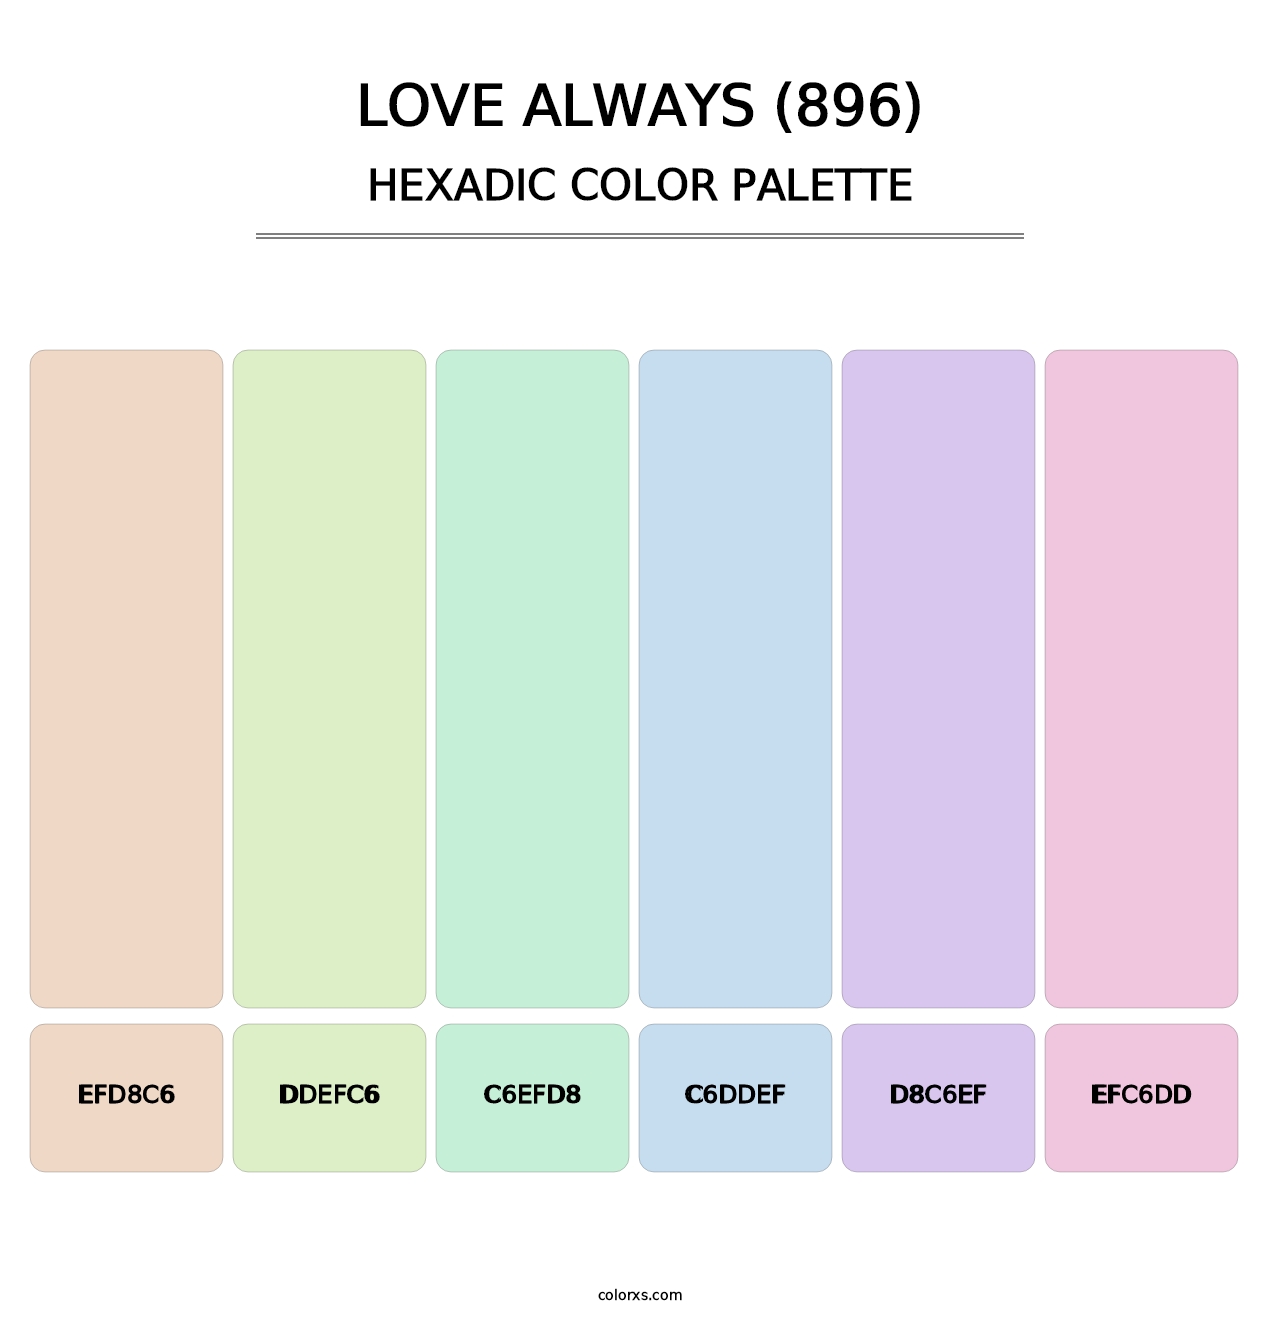 Love Always (896) - Hexadic Color Palette